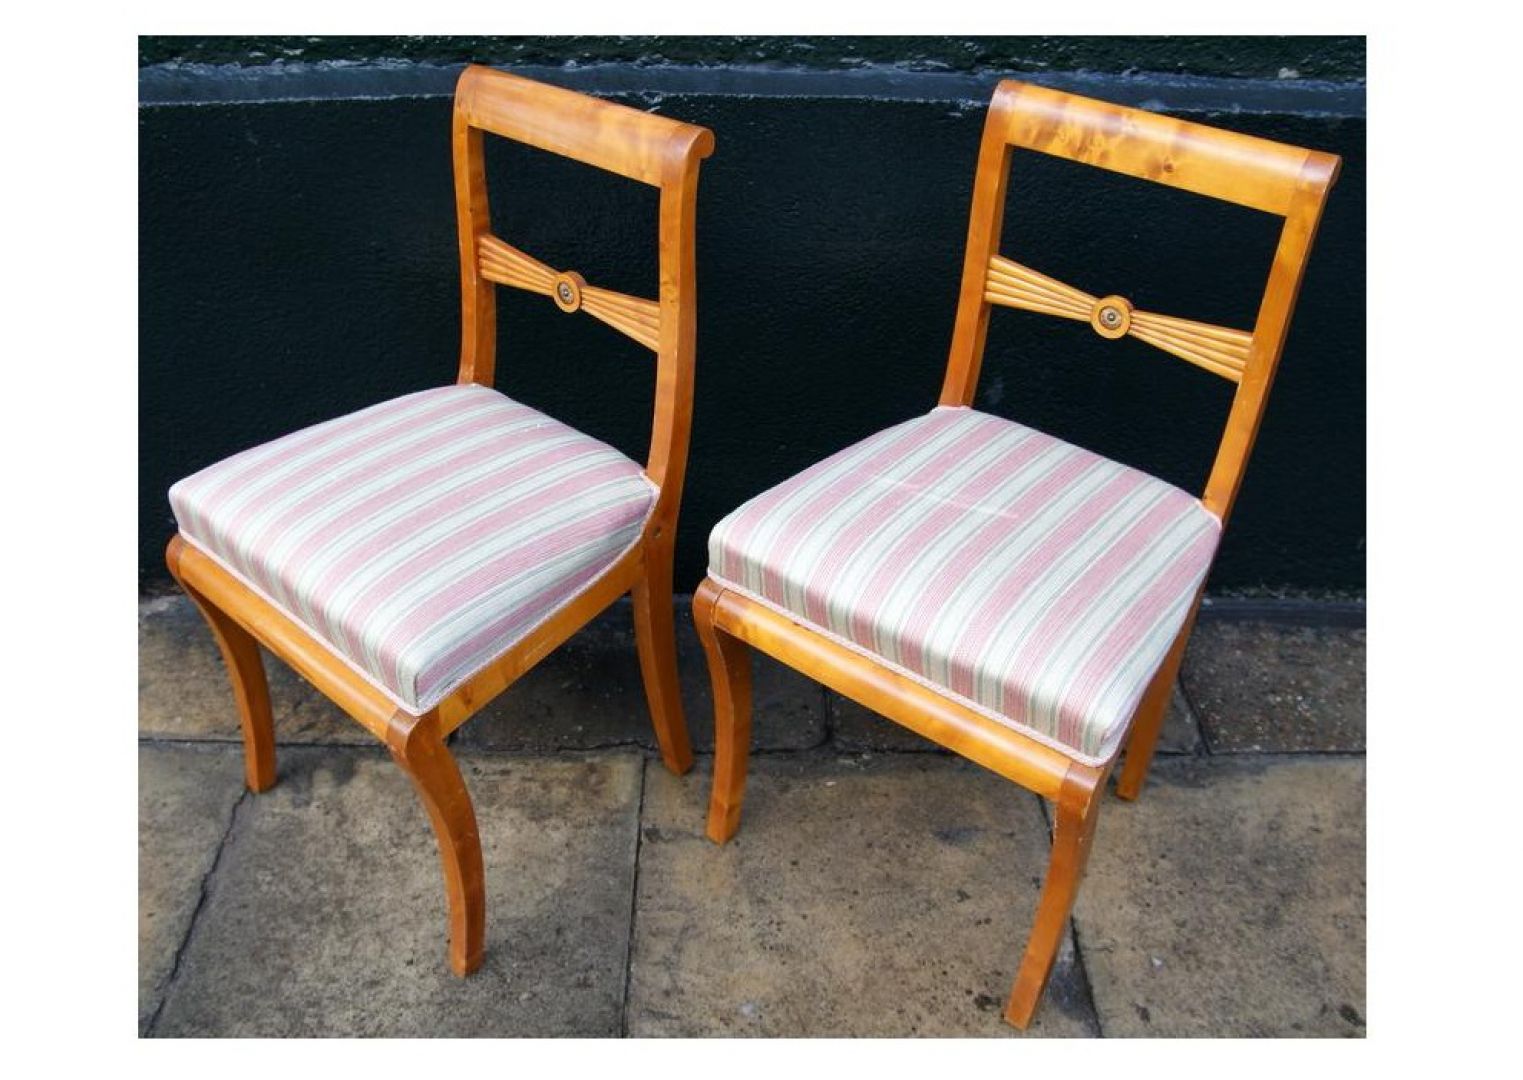 Krzesła w typie mebli Biedermeier z lat 40-tych XXw.., drewno brzoza
Fot. Starych Mebli Czar